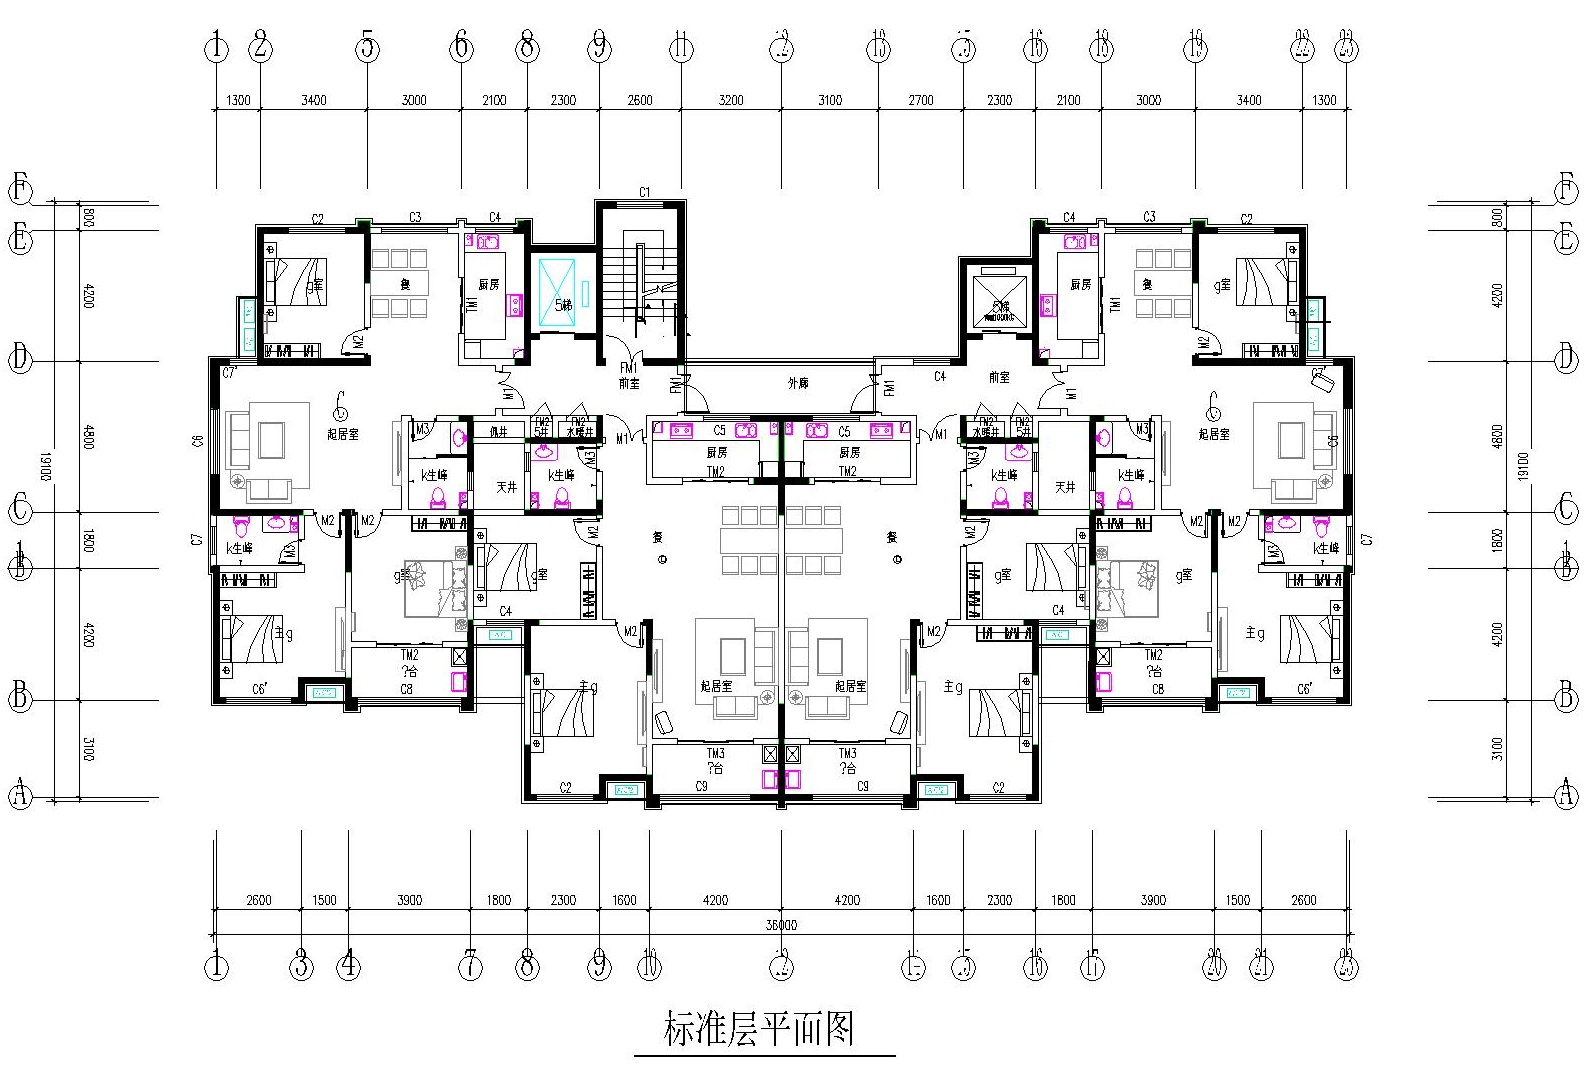 高层4+1住宅户型平面图免费下载 - 建筑户型平面图 - 土木工程网